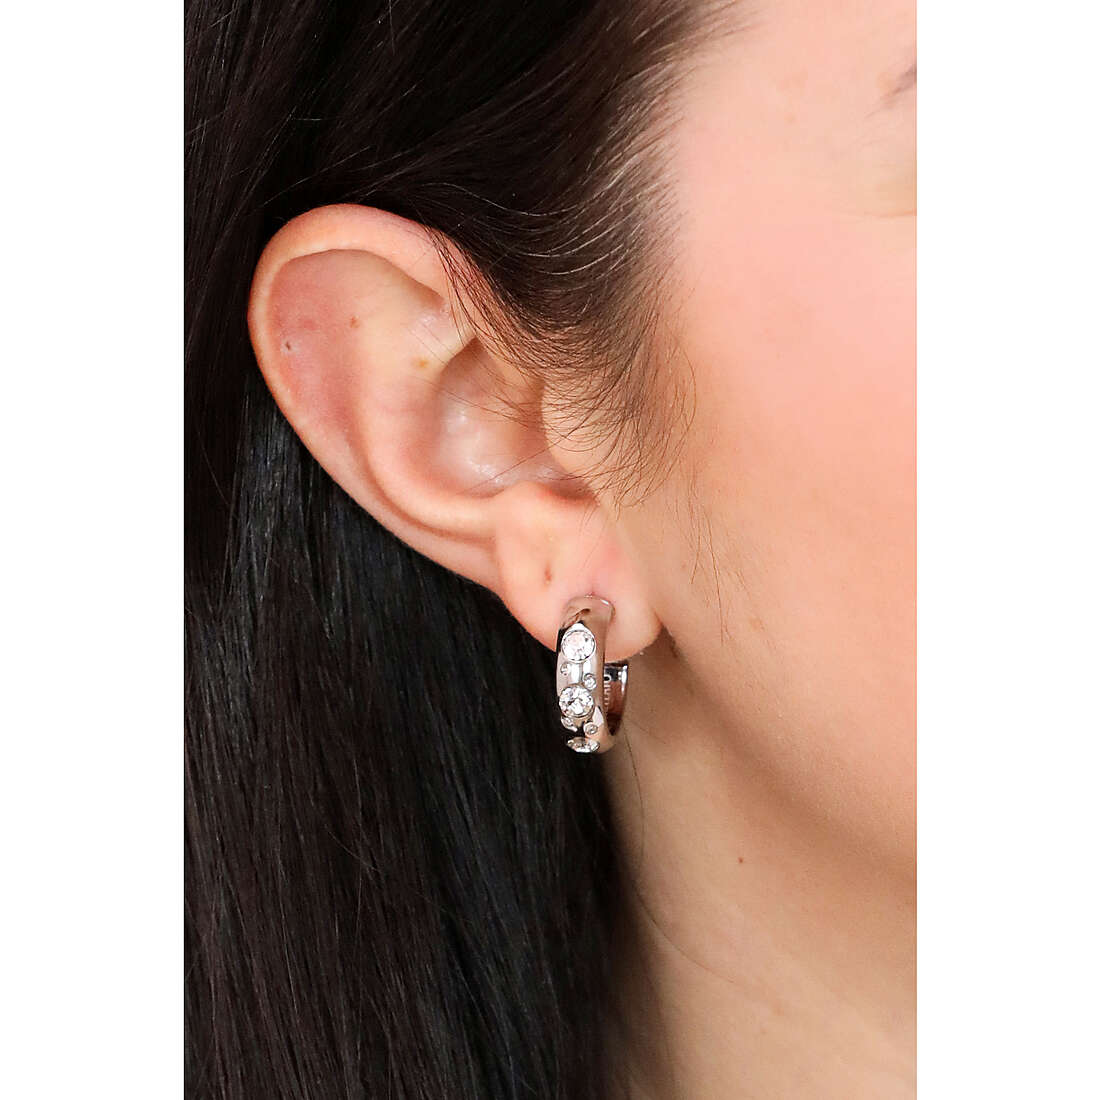 Morellato earrings Poetica woman SAUZ20 wearing